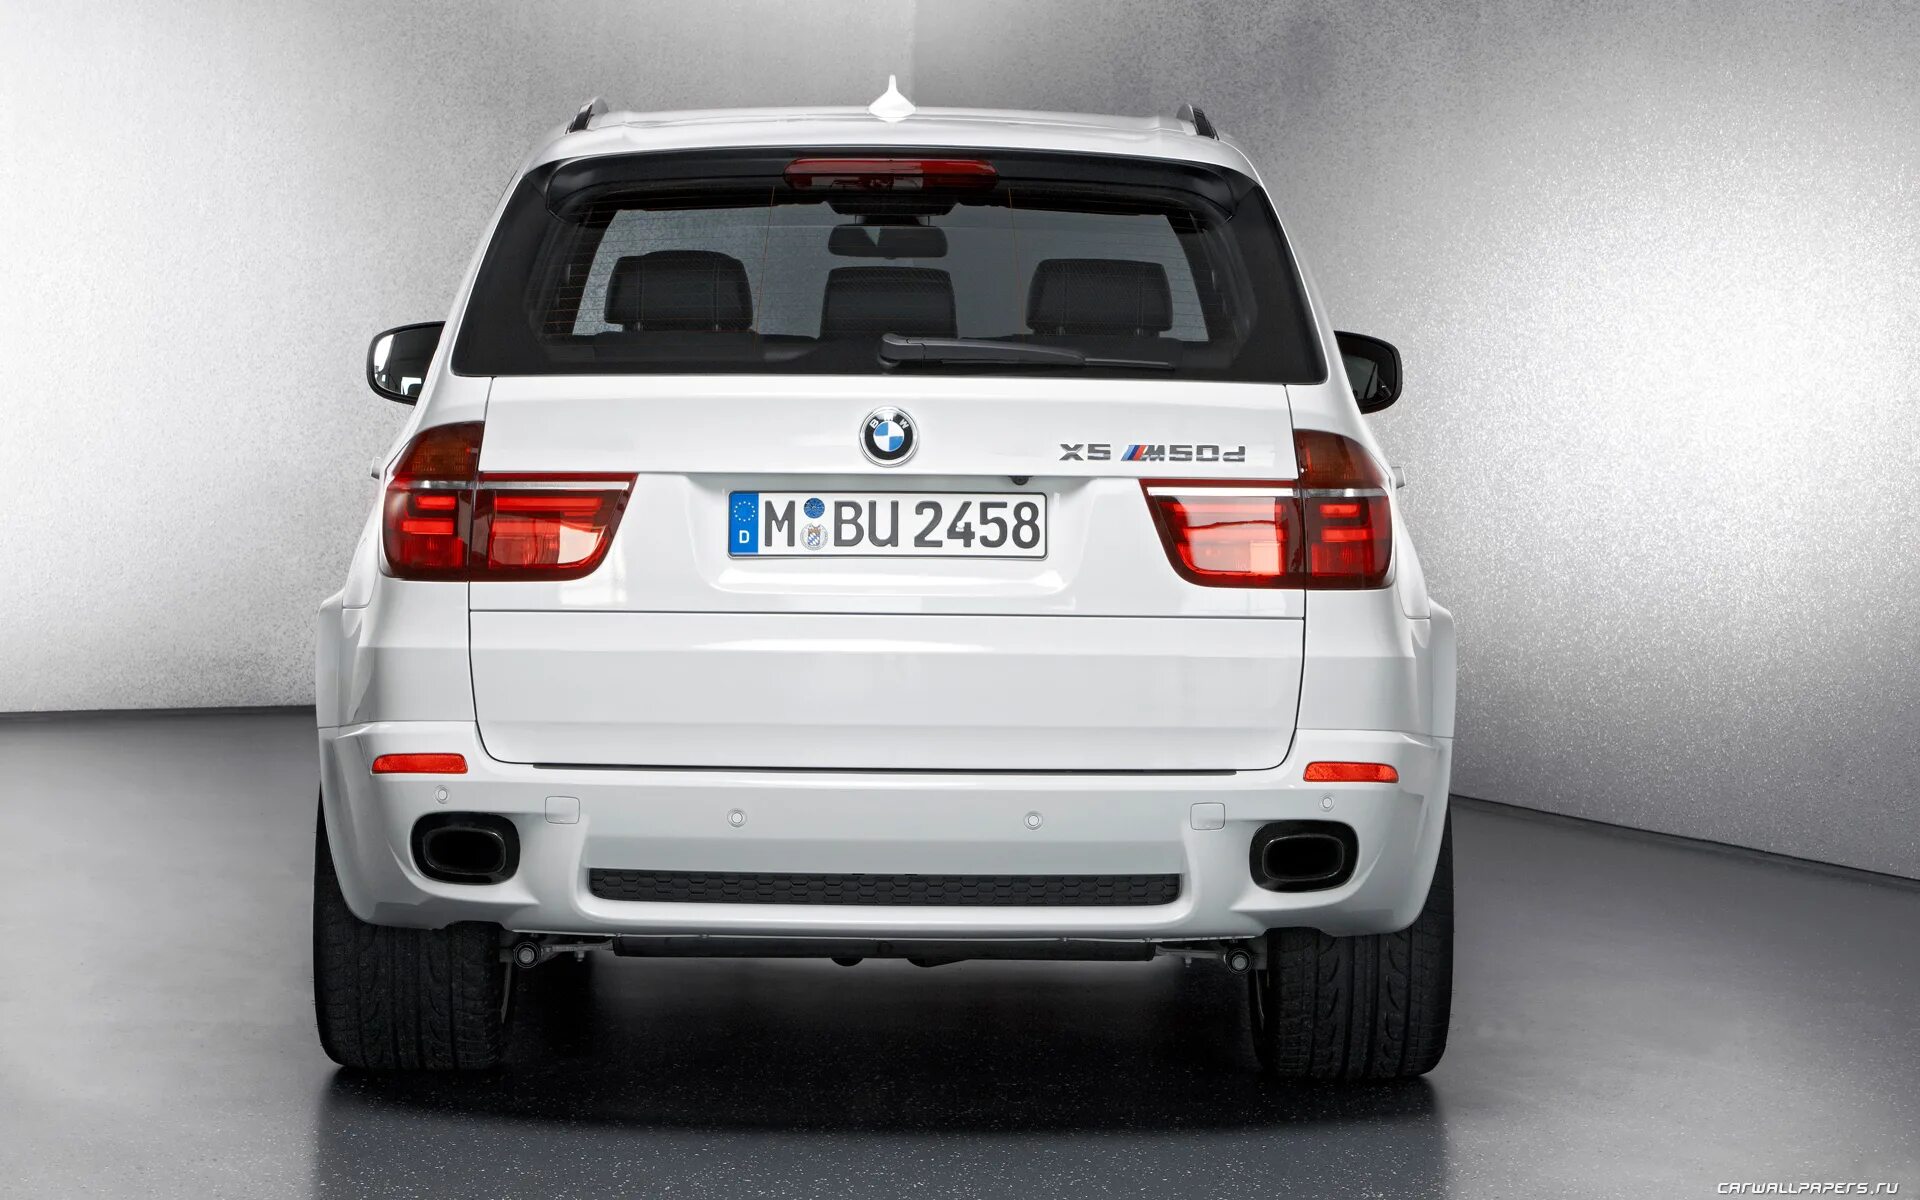 M 2012 b. BMW x5 m50d. BMW x5 m Diesel. BMW x5 m5 2012. BMW x5 e70 2012.